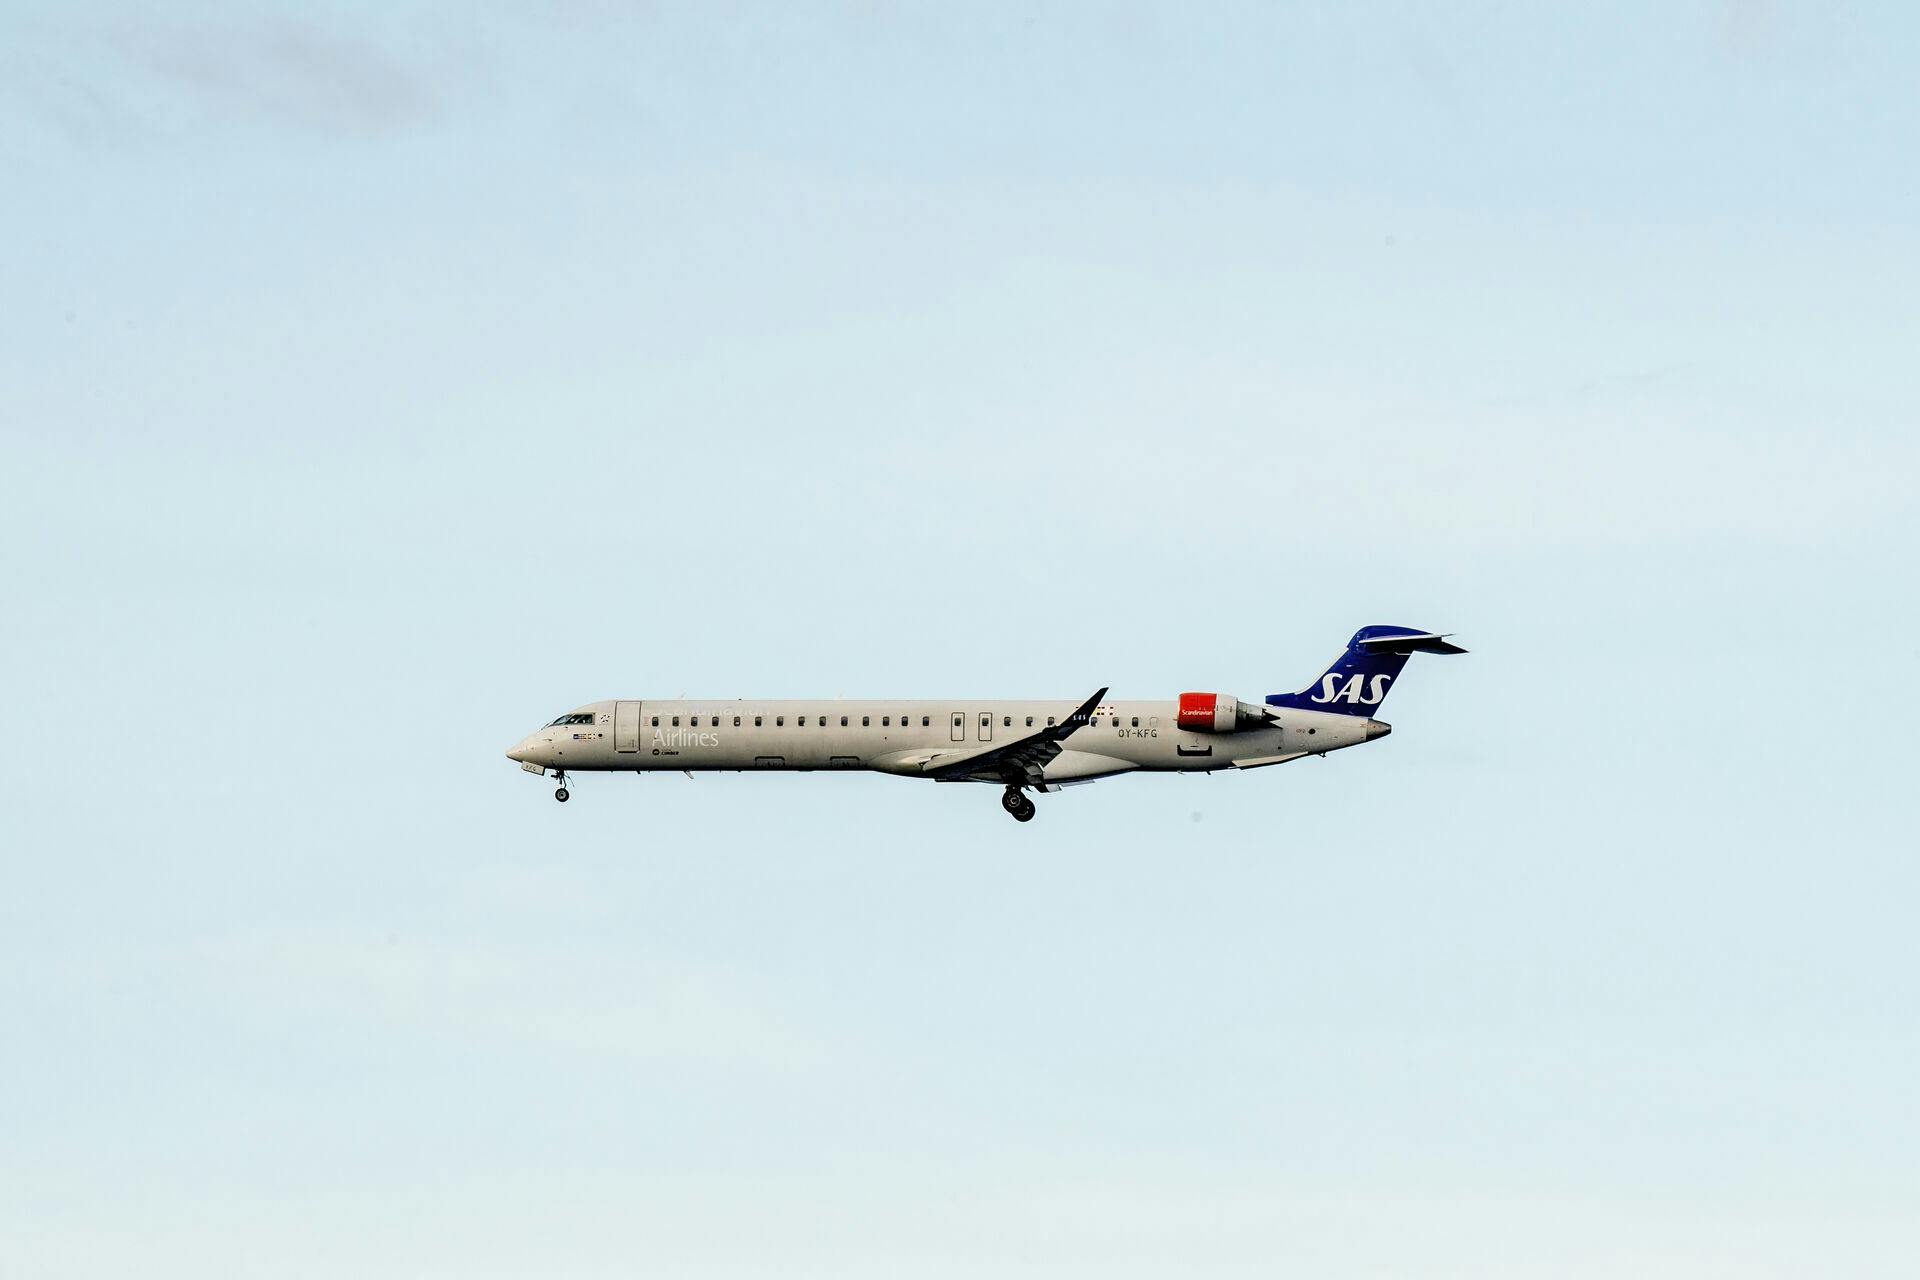 Sådan ser SAS-flyet - en CRJ900 - ud, som fredag aften fik problemer med trykket fra vej fra Danmark til Sverige.